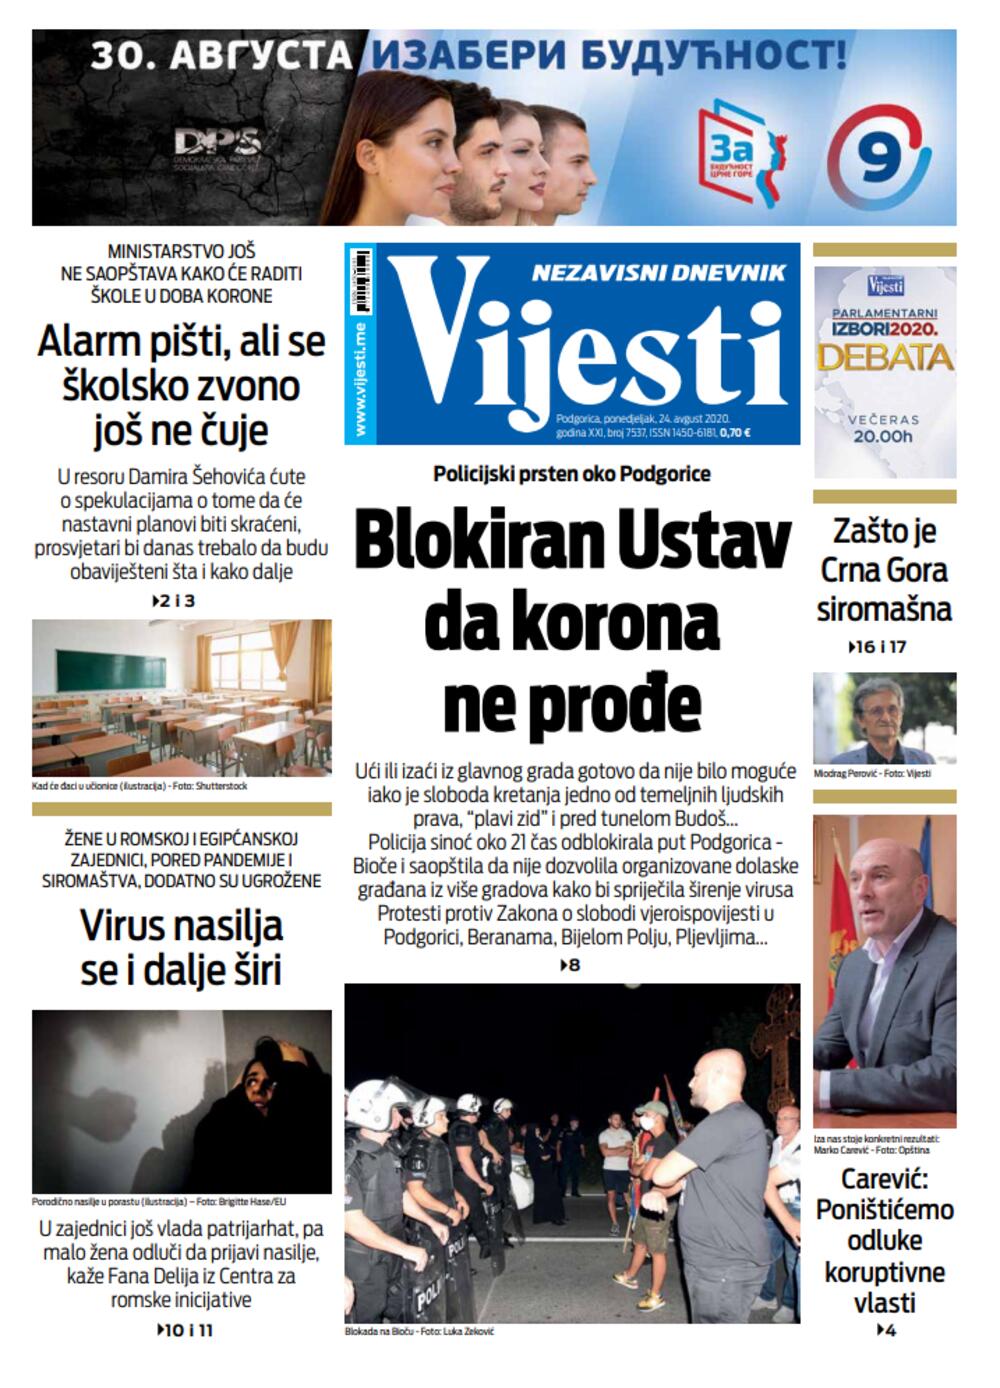 Naslovna strana "Vijesti" za 24. avgust 2020., Foto: Vijesti